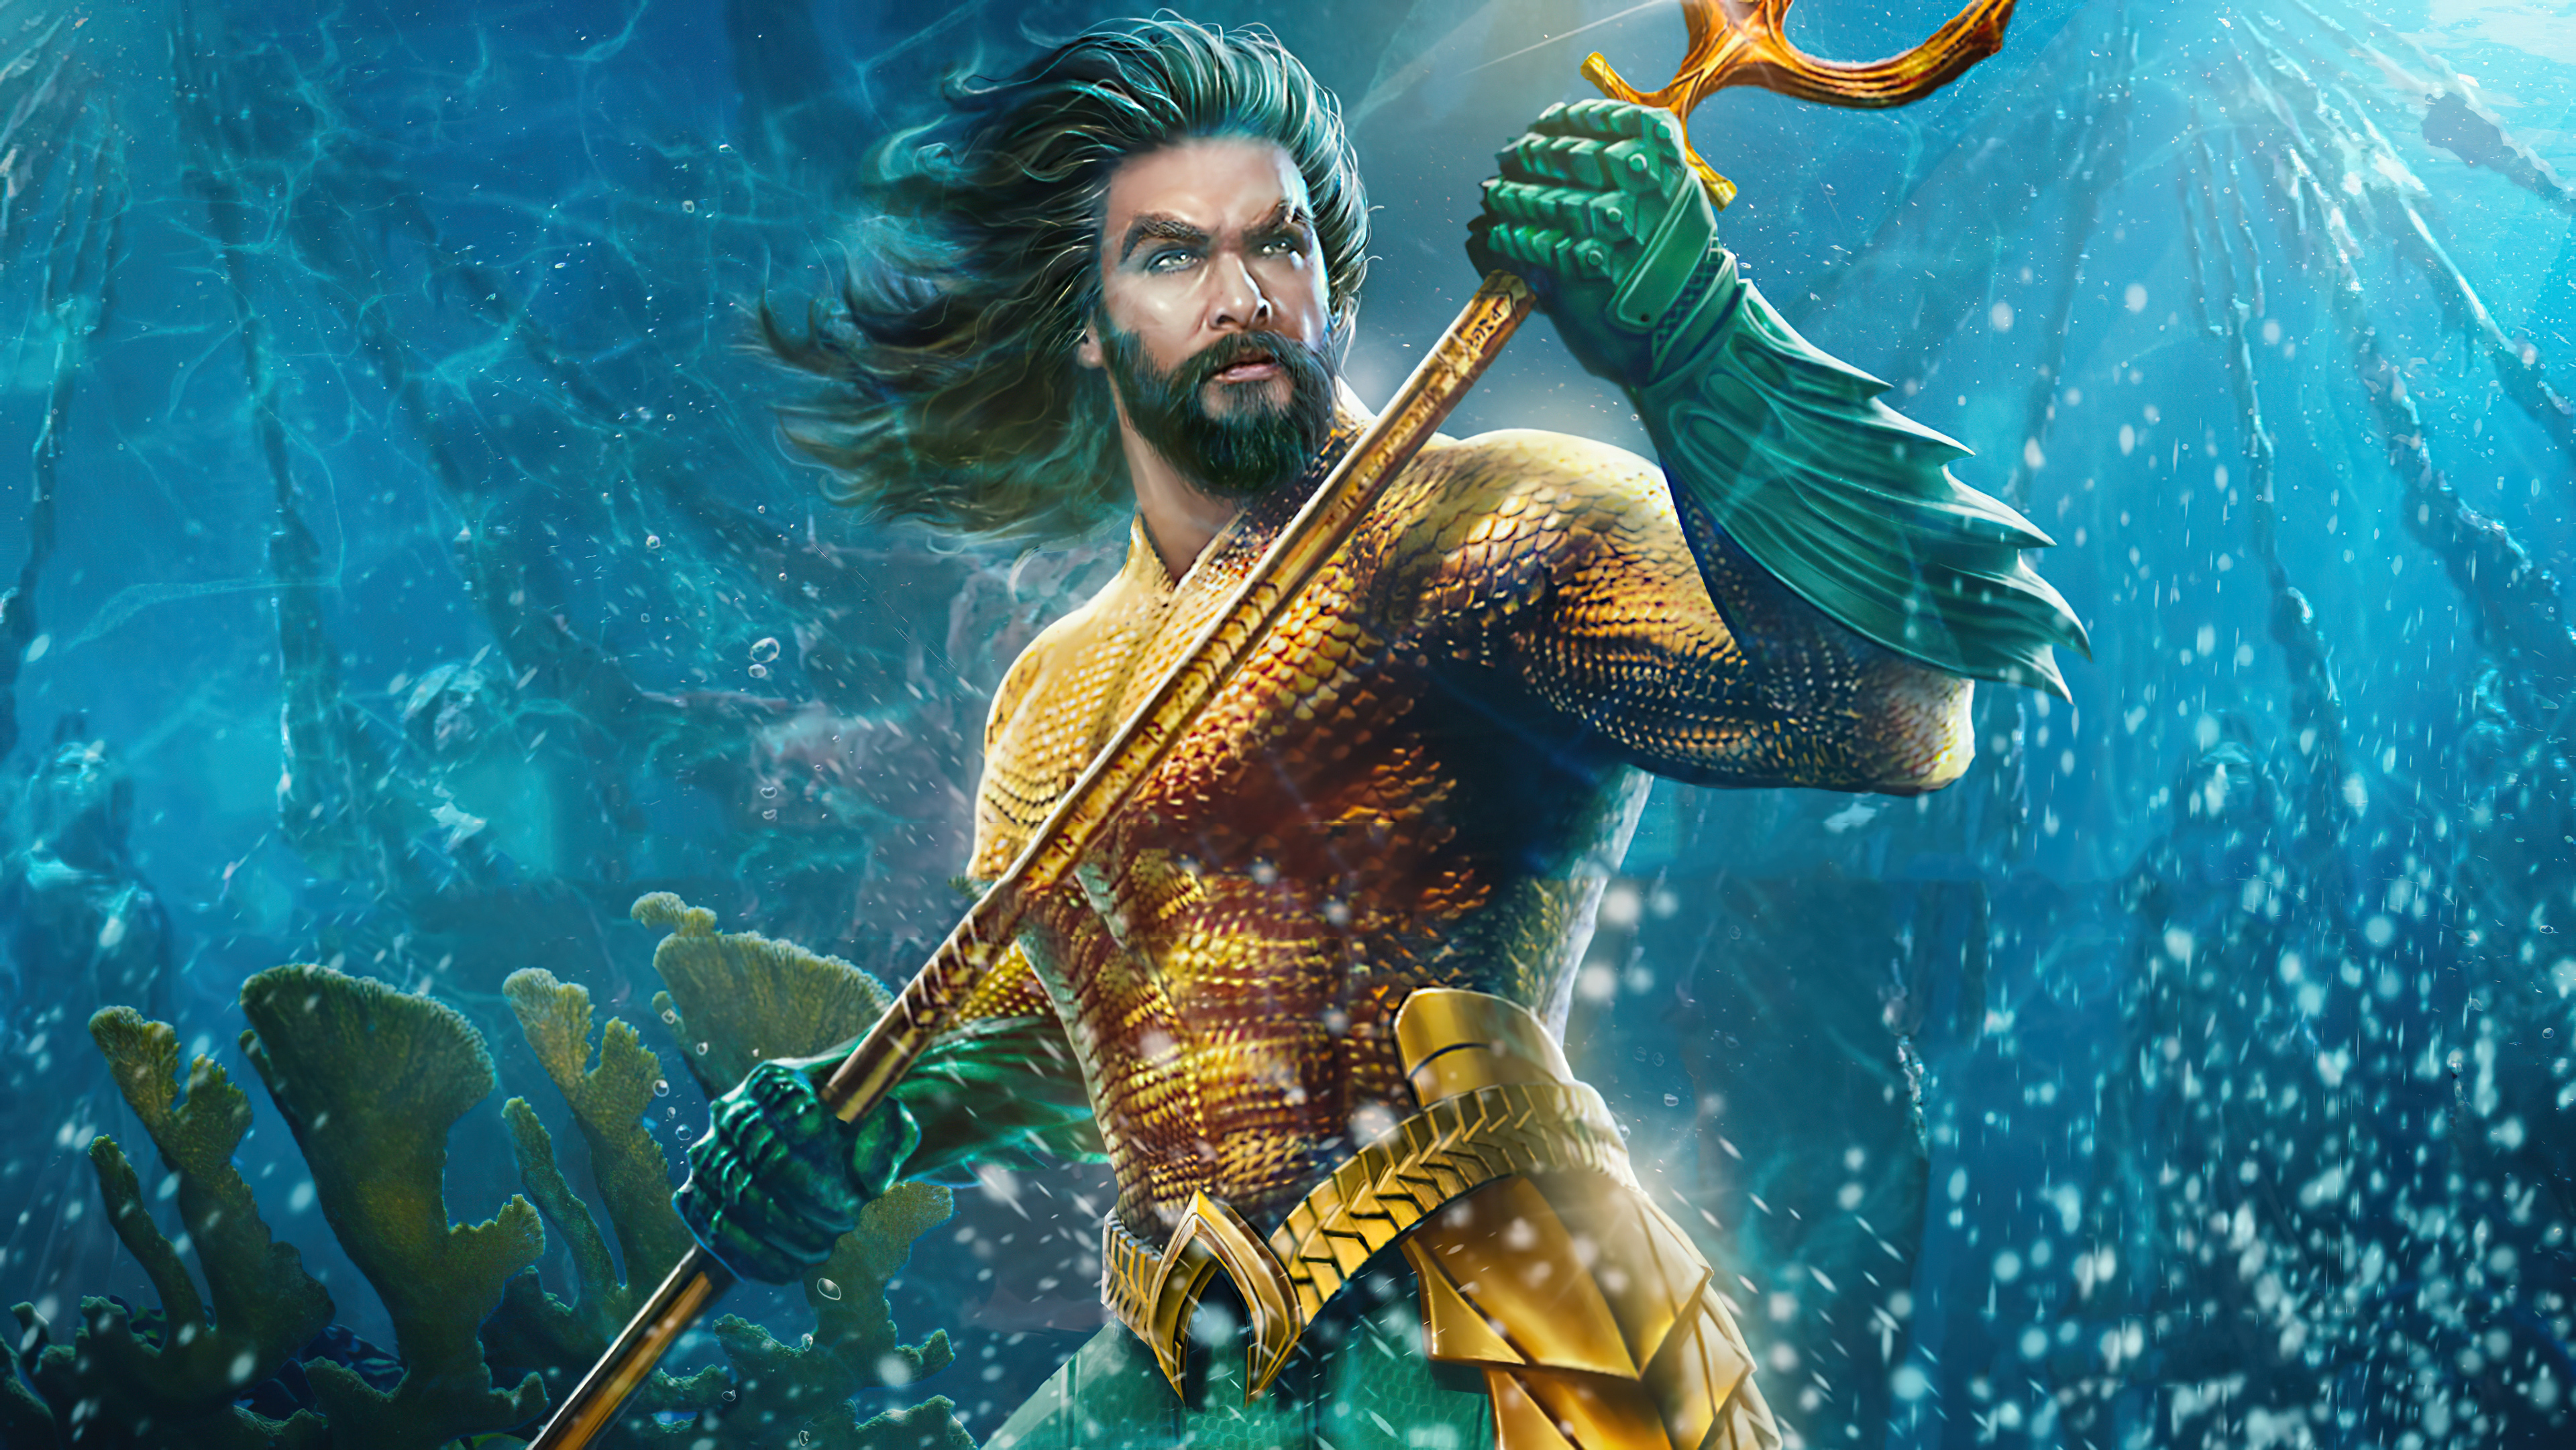 Aquaman Wallpaper 4K Download For Android : Aquaman 4k 3840x2160